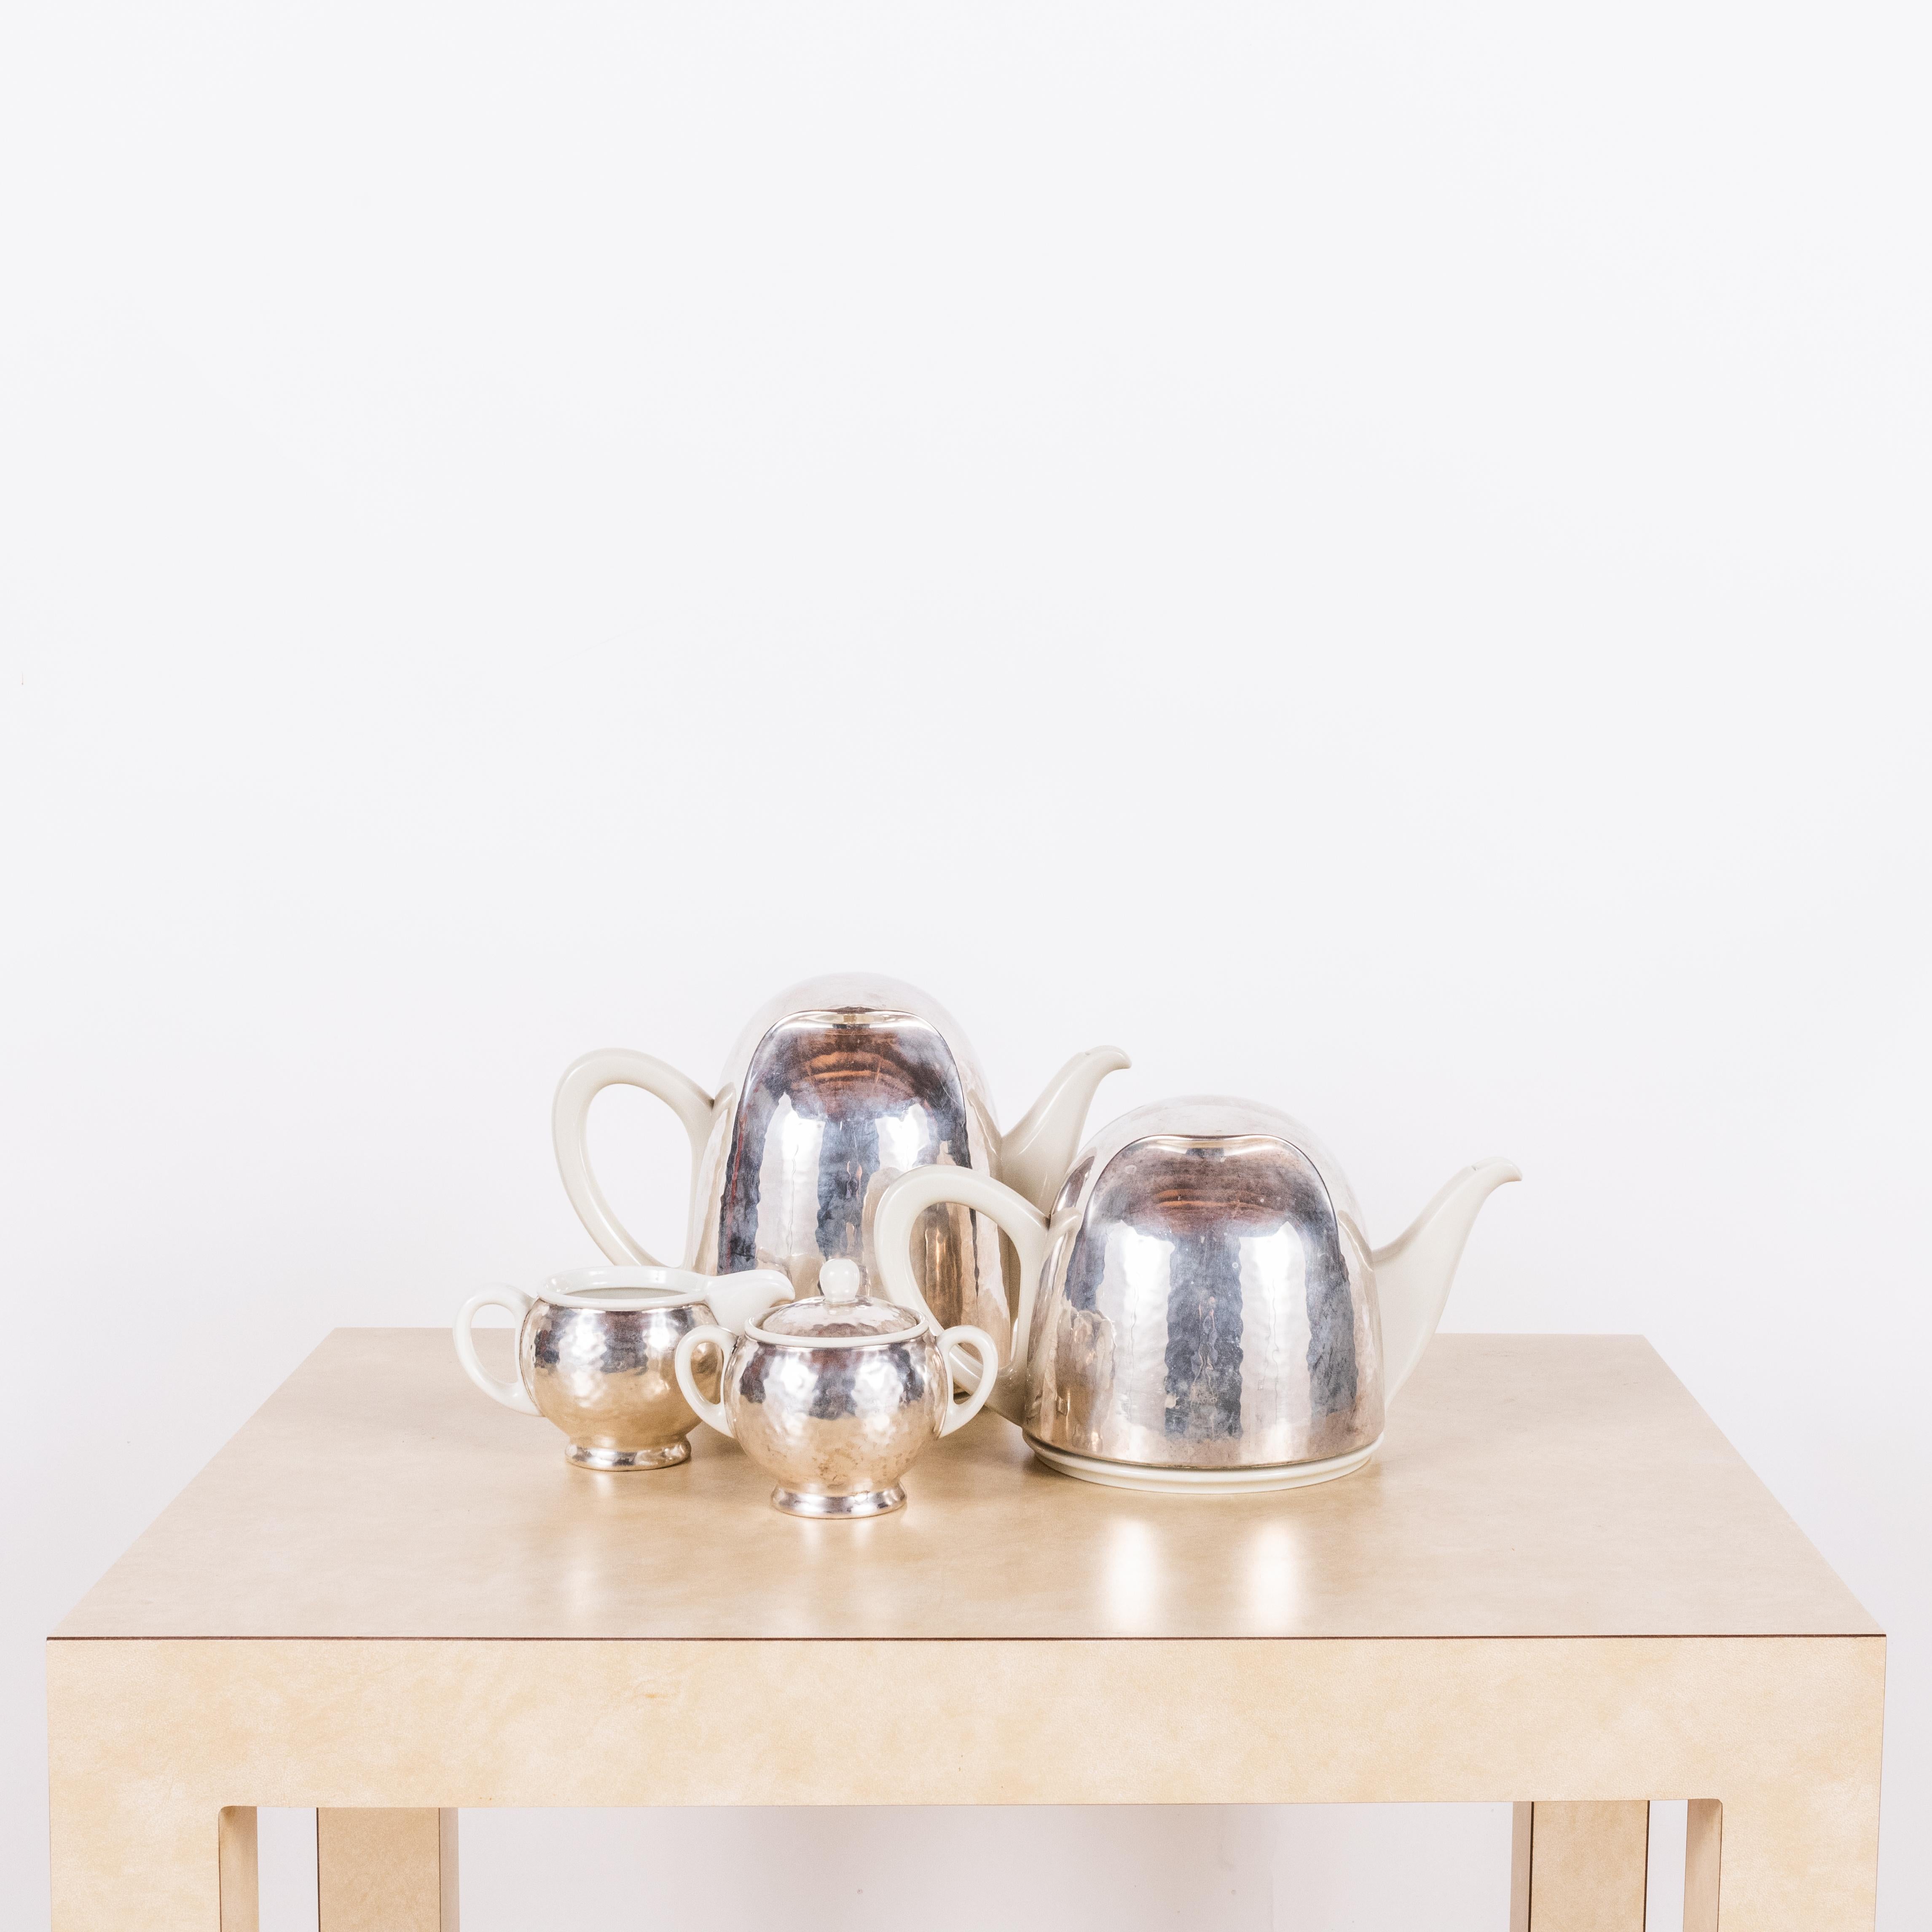 Bauhaus Hutschenreuther Selb (Bavière) Service à thé et à café en argent.

Une conception incroyable : des isolateurs thermiques plaqués argent doublés d'un feutre recouvrant les pots.

Vendu comme un ensemble.

Les dimensions indiquées